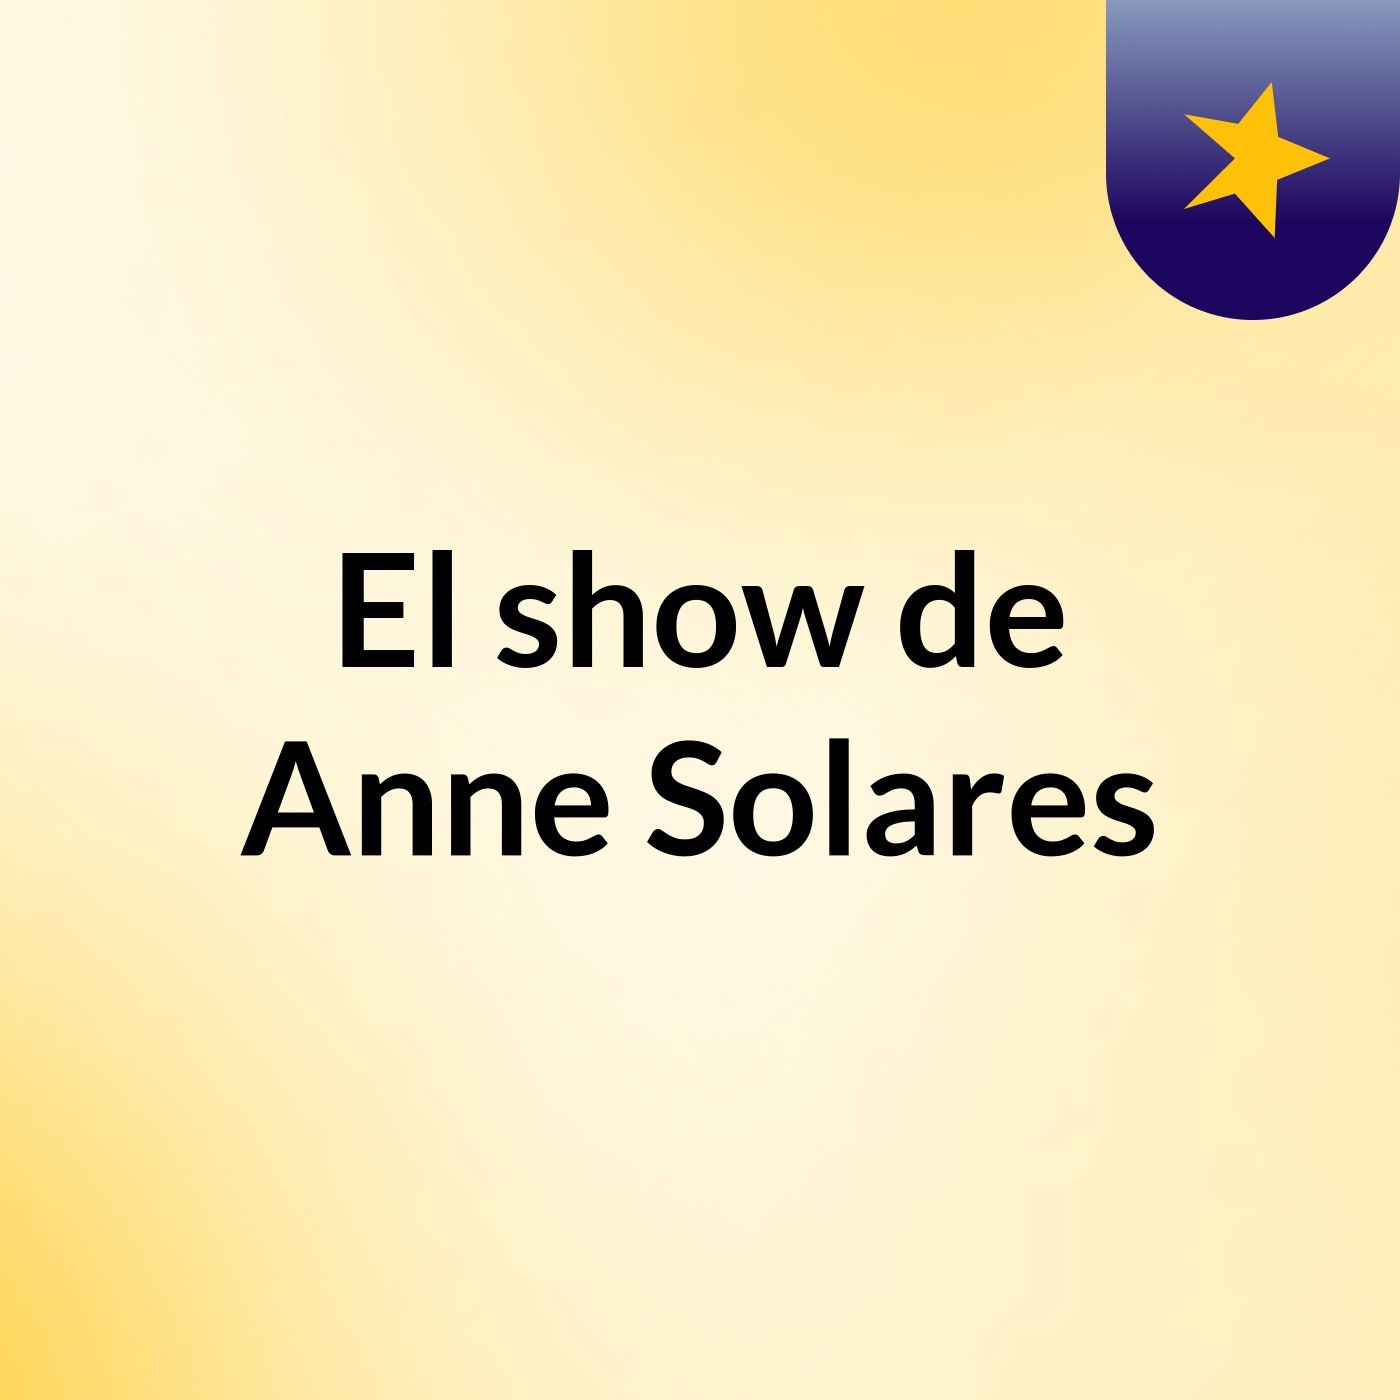 El show de Anne Solares